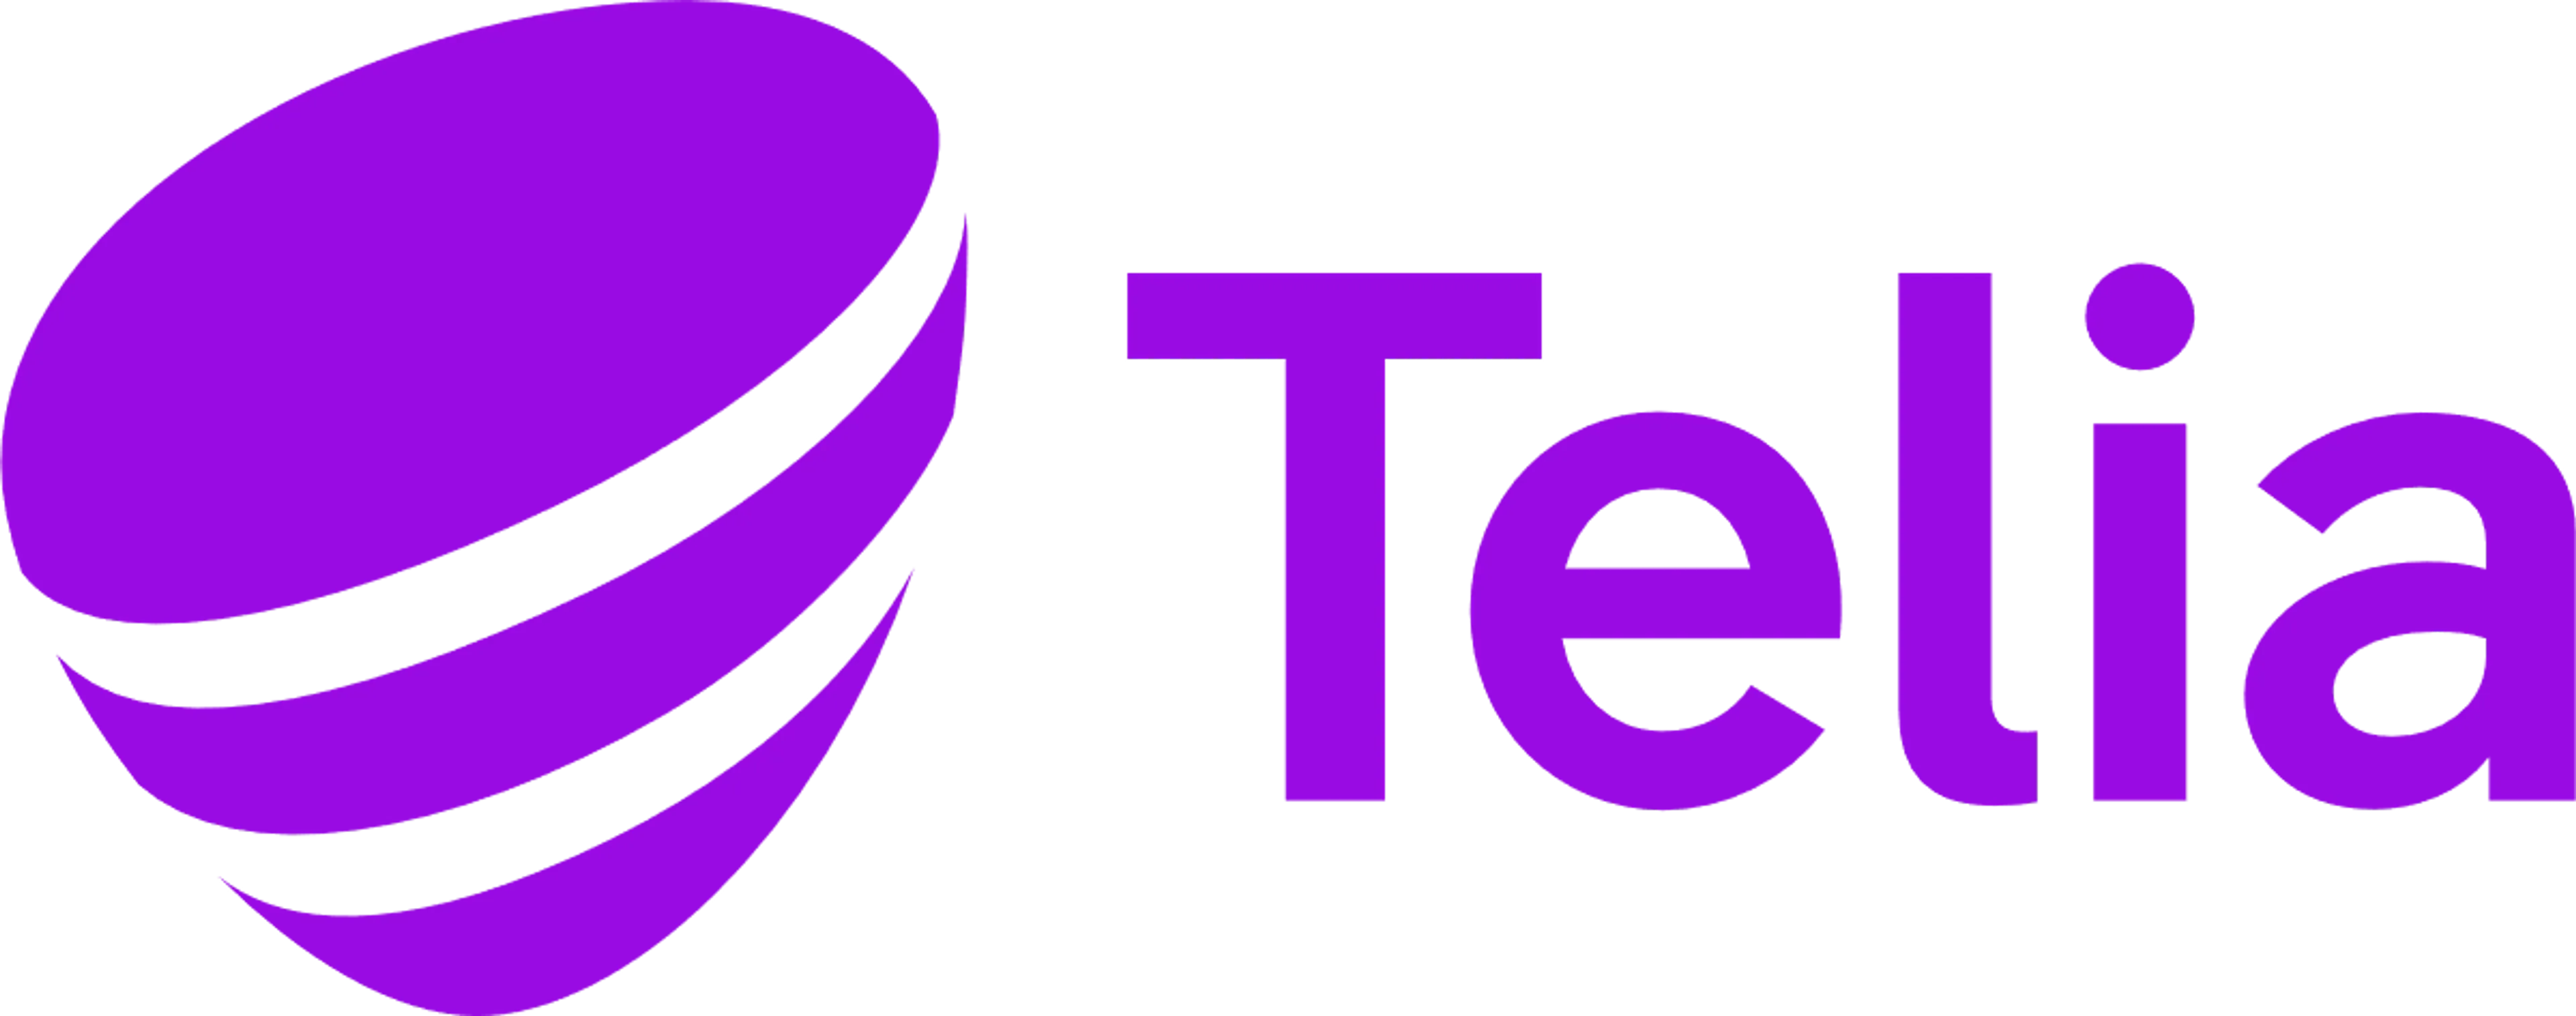 TELIA logo